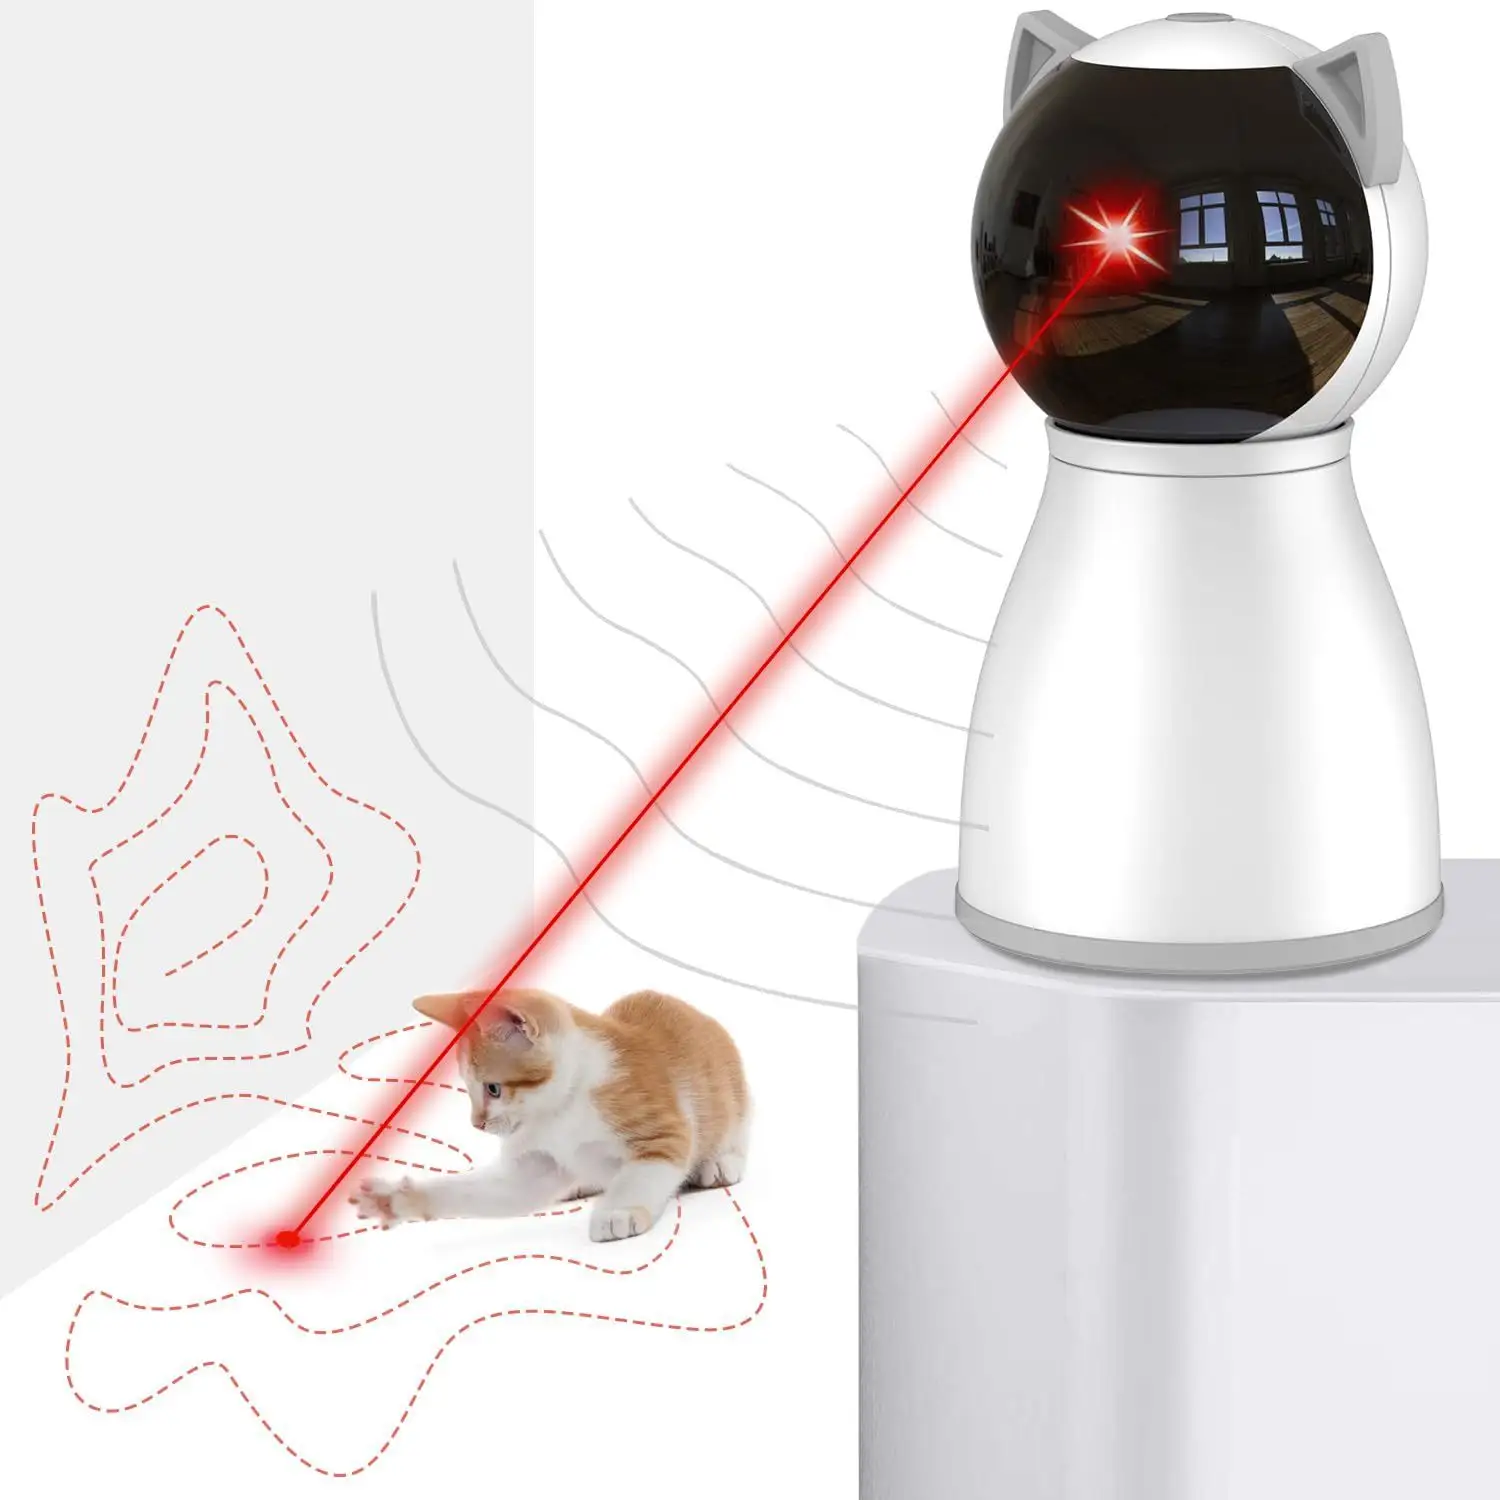 Kedi oyuncaklar gerçek rastgele yörünge şarj edilebilir hareket aktif kedi lazer oyuncak otomatik, interaktif